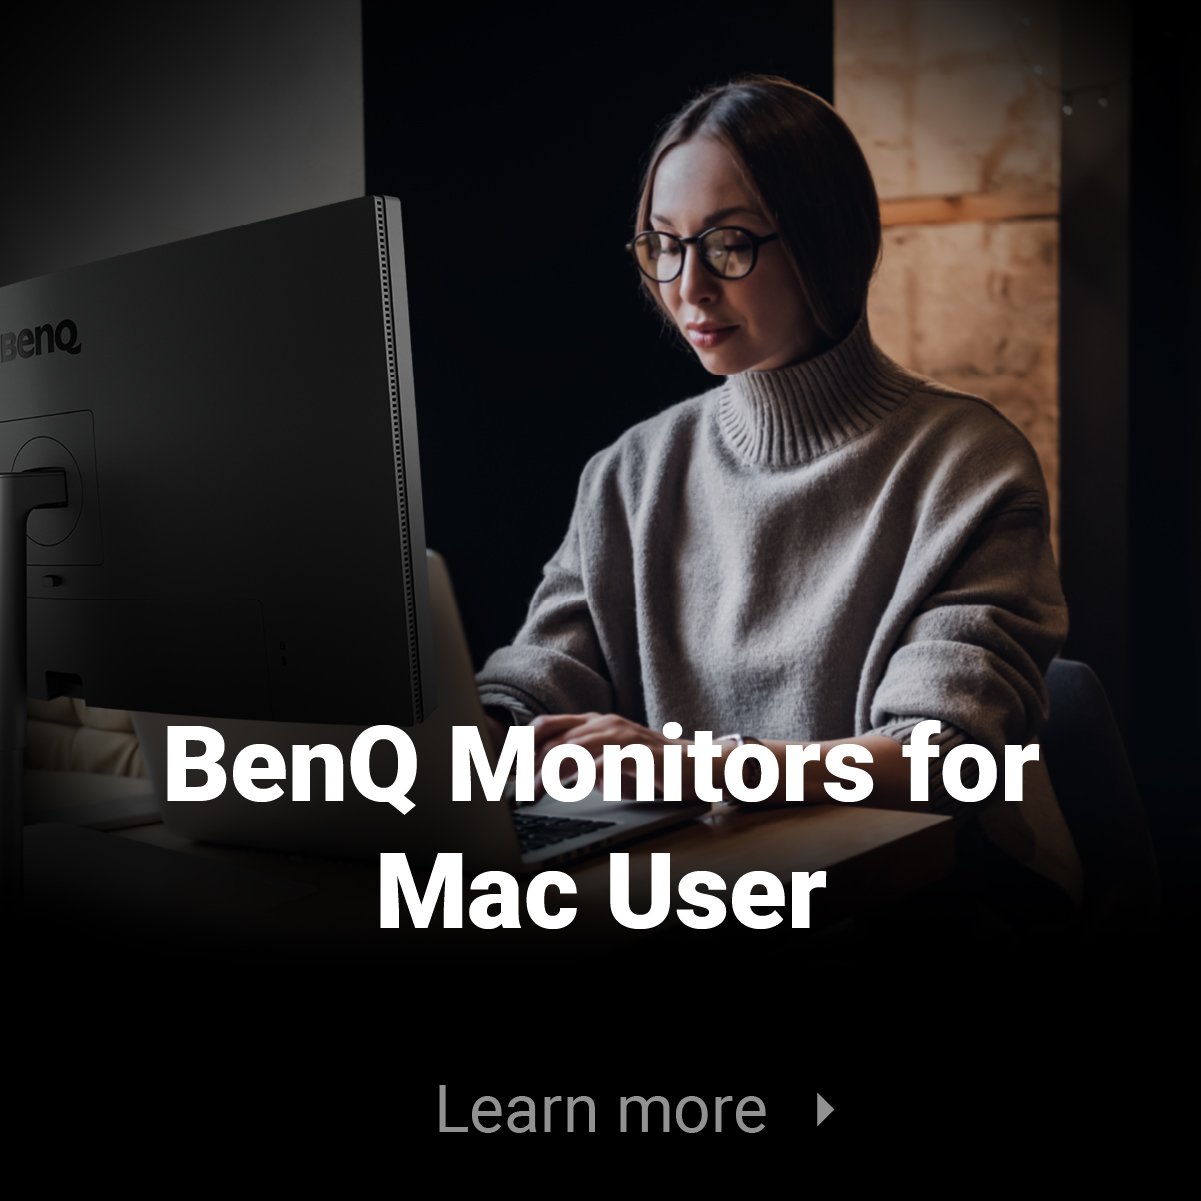 BenQ Monitors for Mac Users